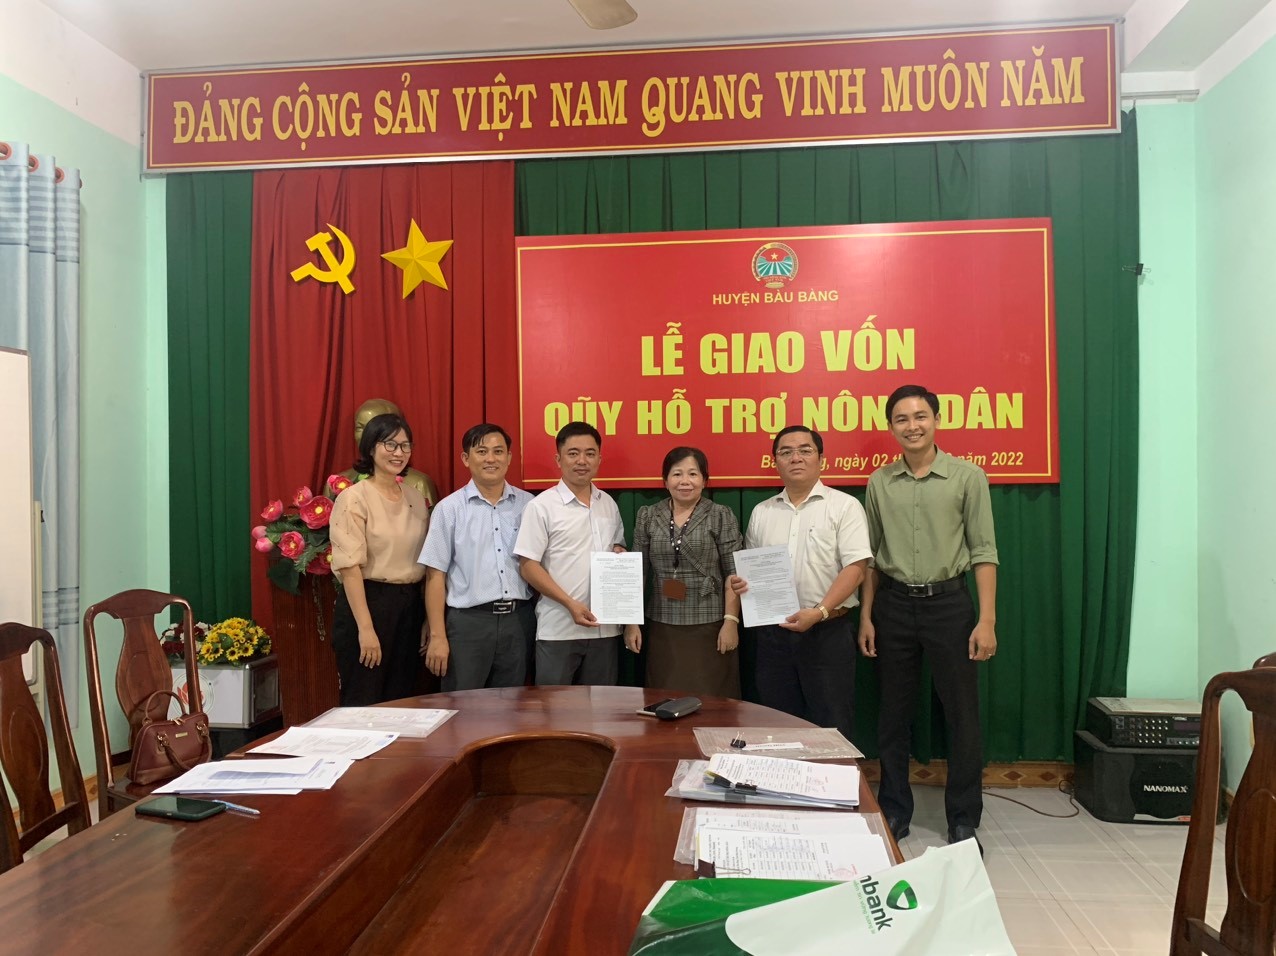 Hội Nông Dân huyện Bàu Bàng phối hợp giao vốn quỹ hỗ trợ Nông dân tỉnh Bình Dương